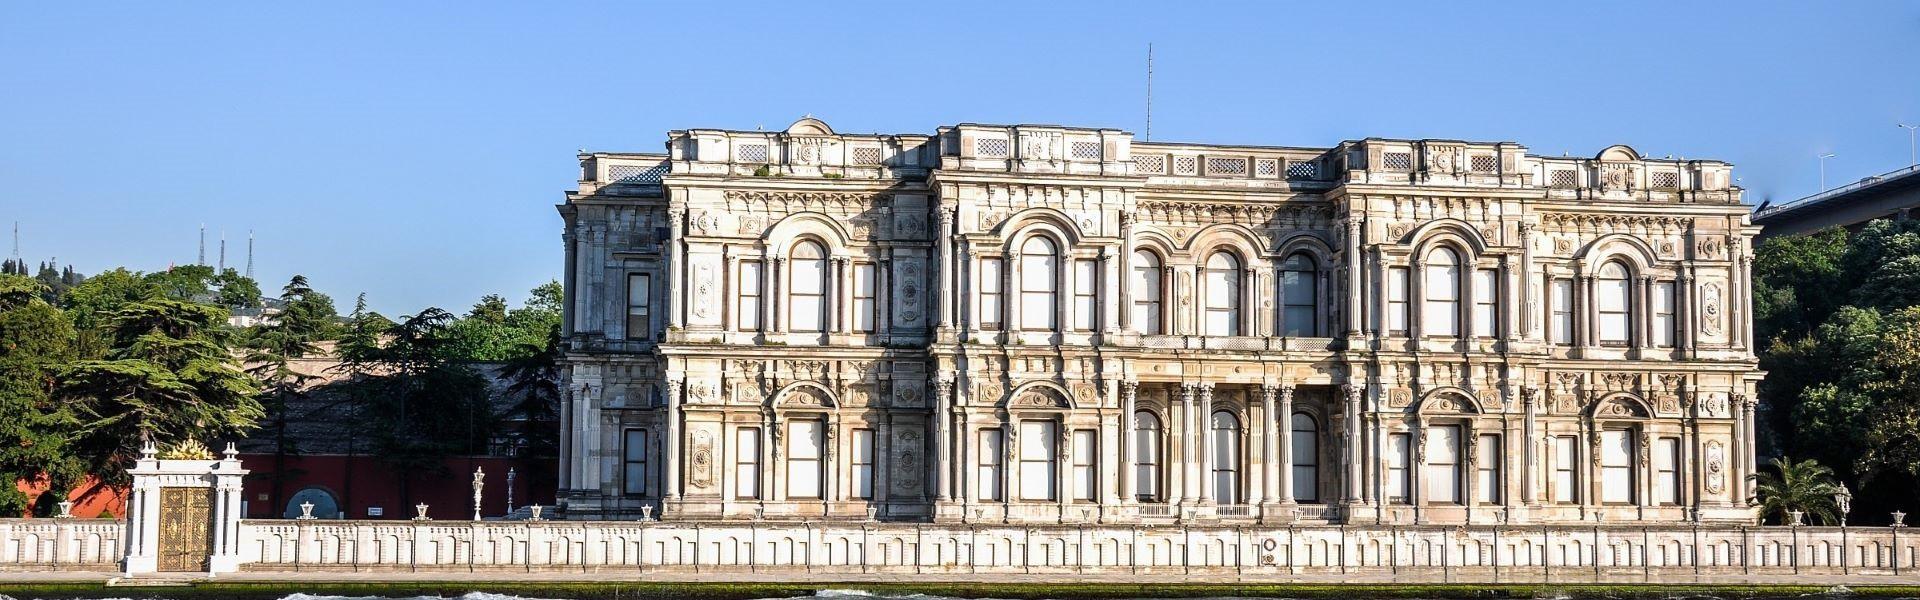 کاخ بیلربی  استانبول Beylerbeyi palace Istanbul